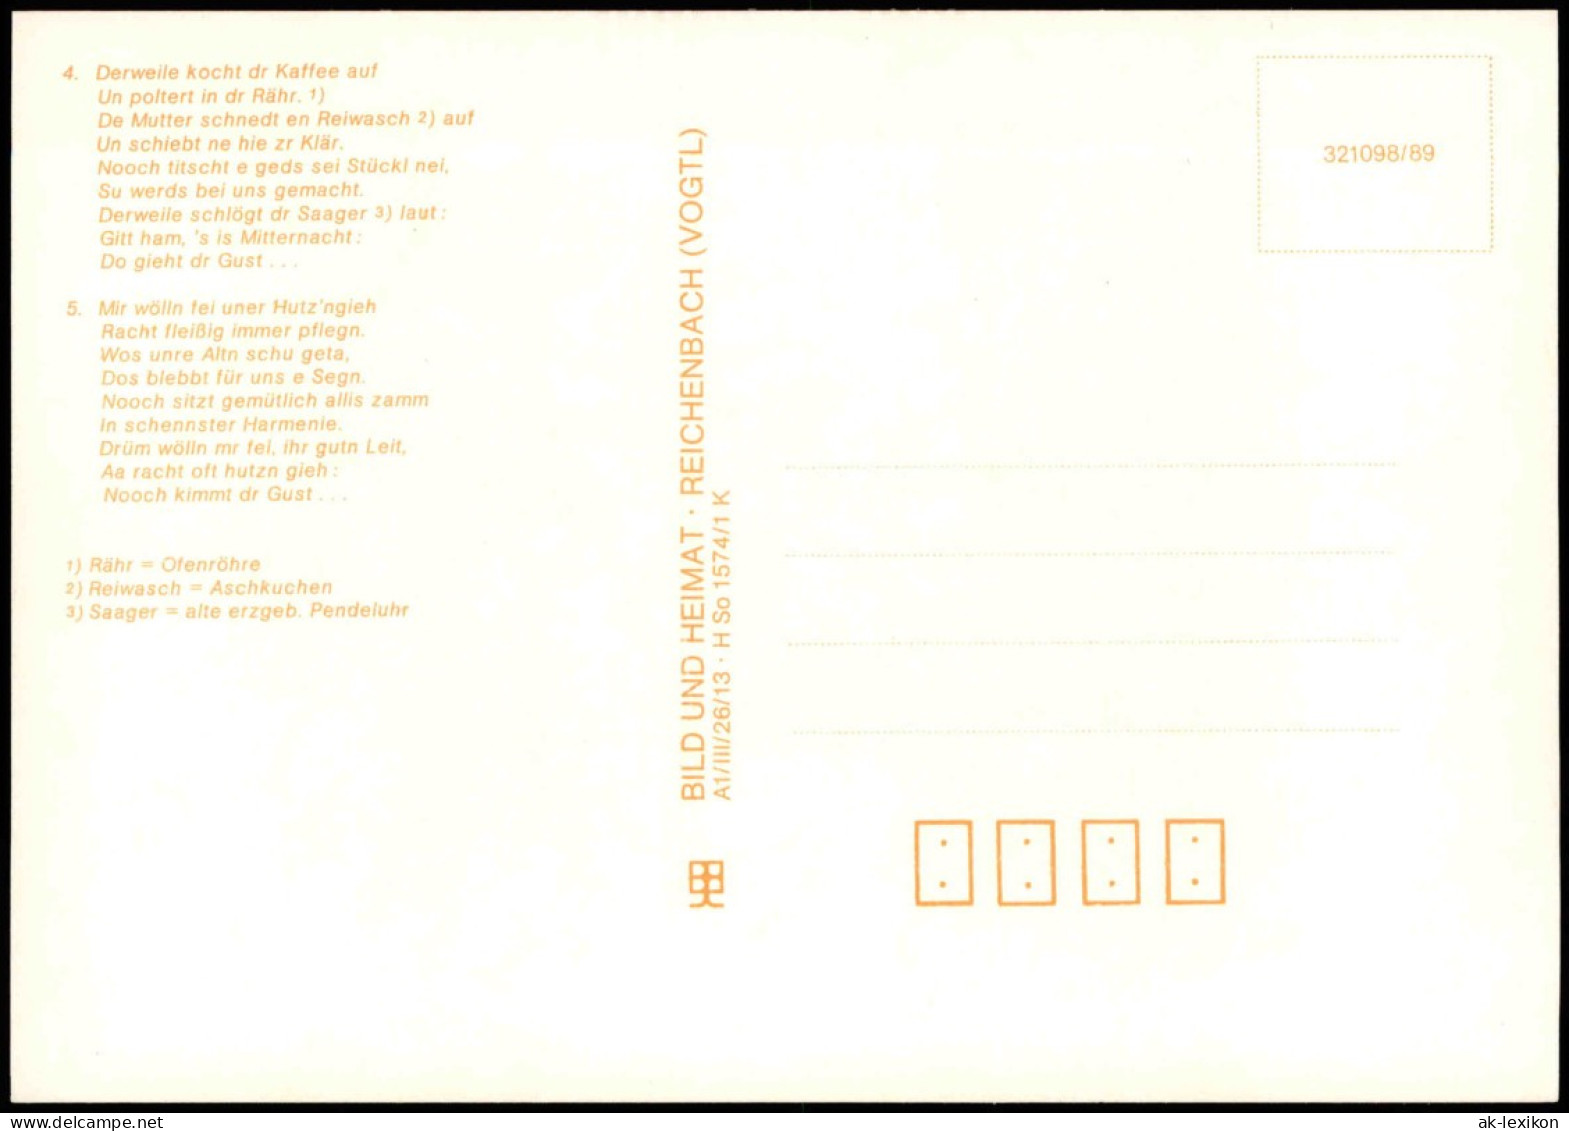 15 Historische Liedpostkarten Aus Dem Erzgebirge Und Vogtland
DDR 1989 - Music